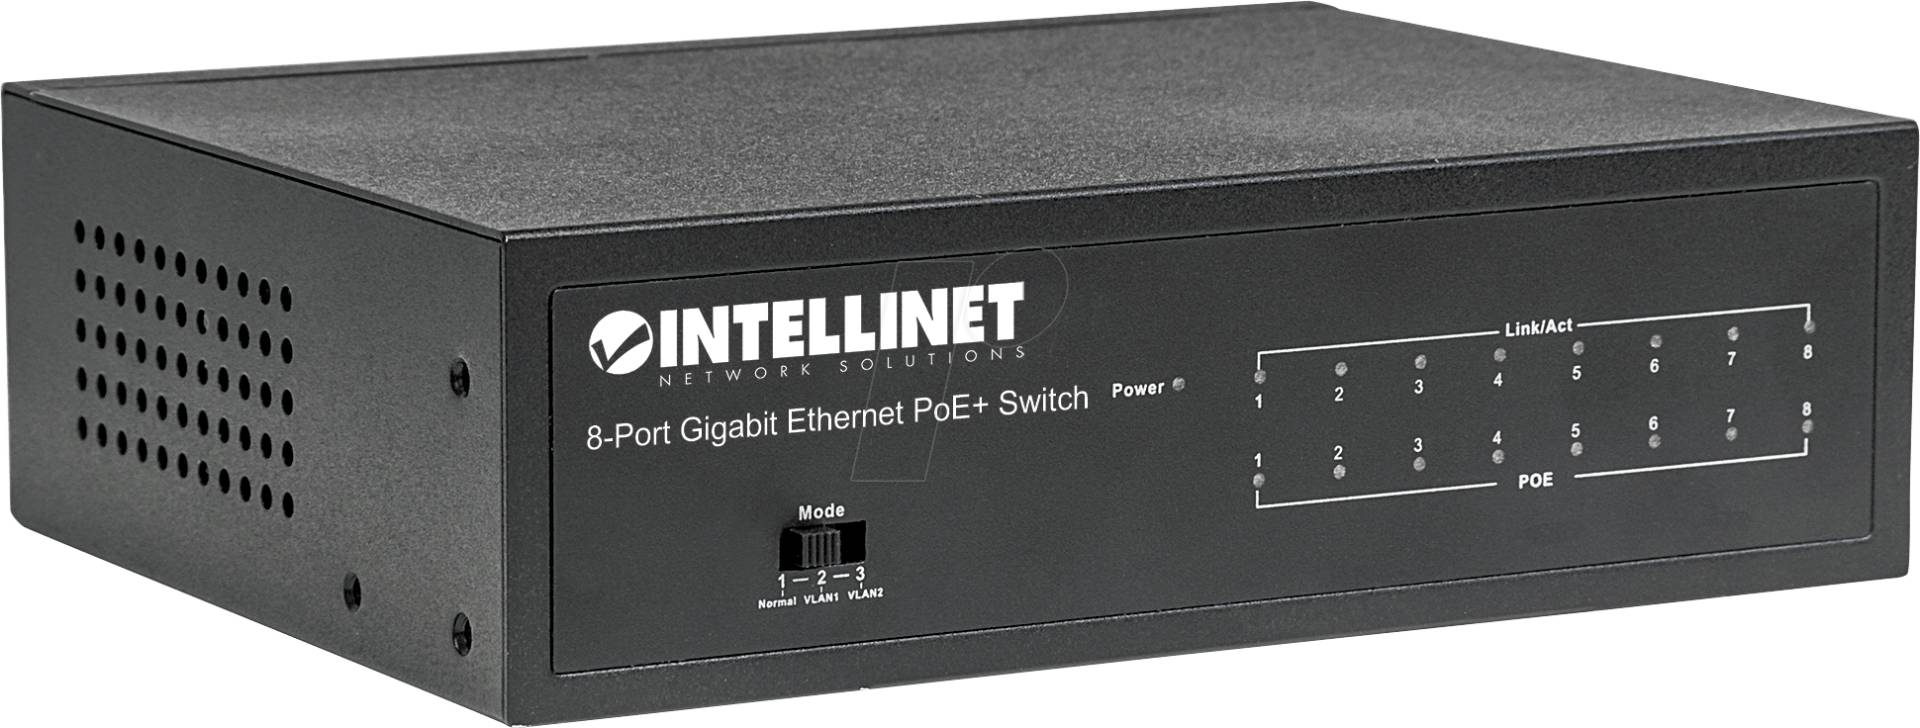 INT 561204 - Switch, 8-Port, Gigabit Ethernet, PoE+ von Intellinet